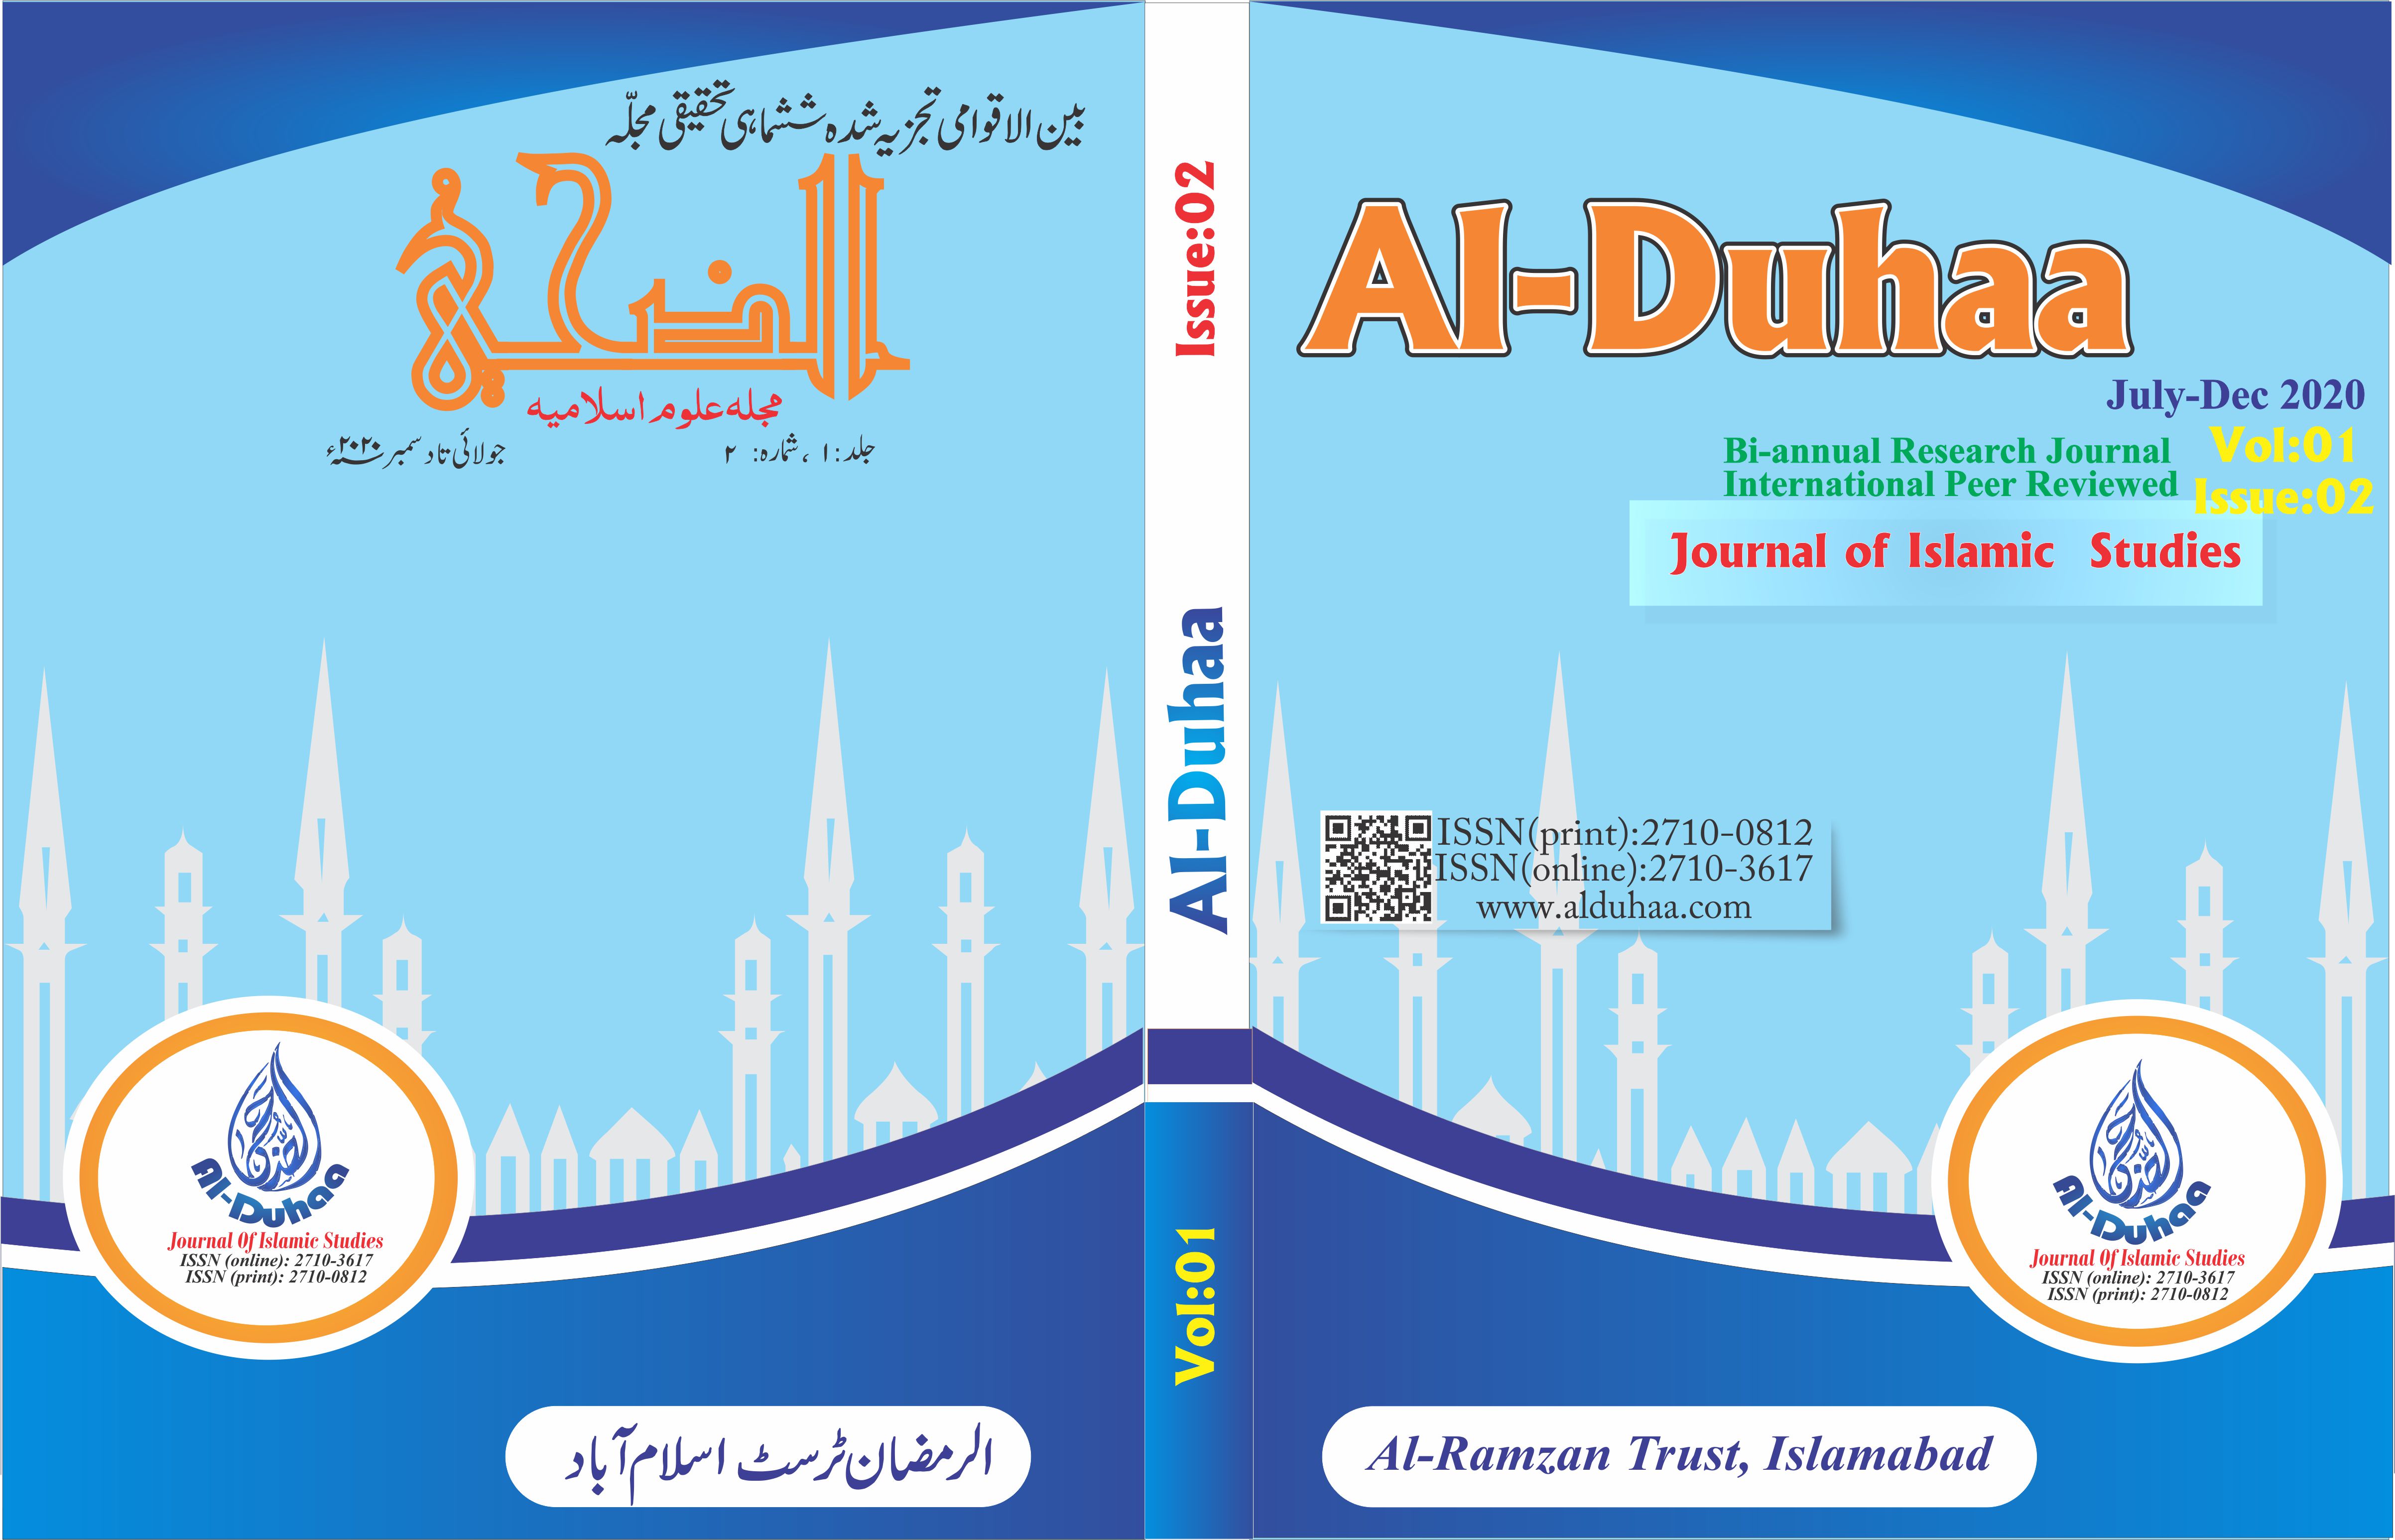 					View Vol. 1 No. 02 (2020): Al-Duhaa (July-Dec, 2020)
				